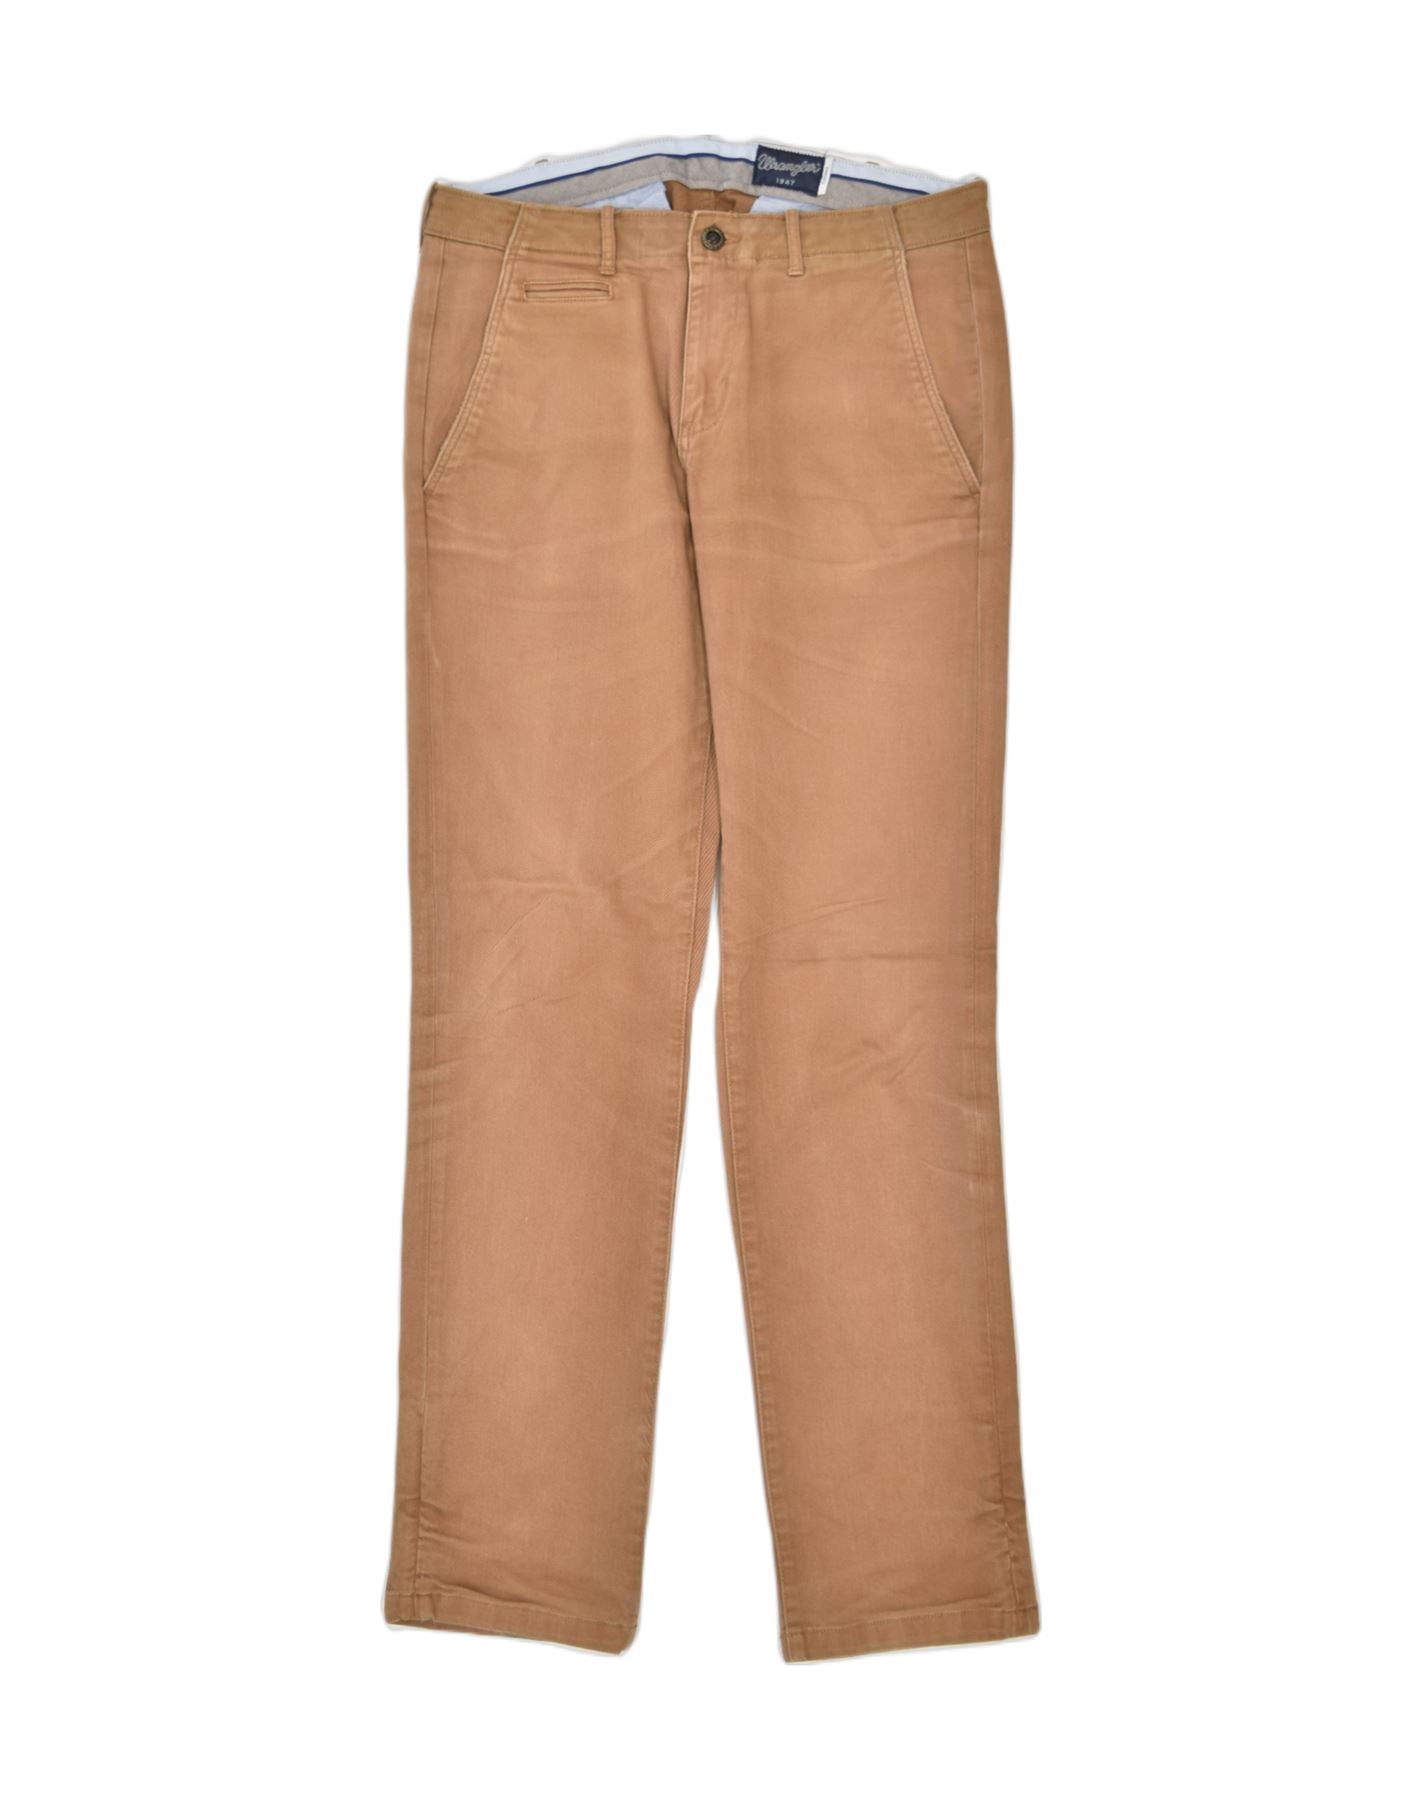 Wrangler Trousers  Buy Wrangler Trousers Online in India